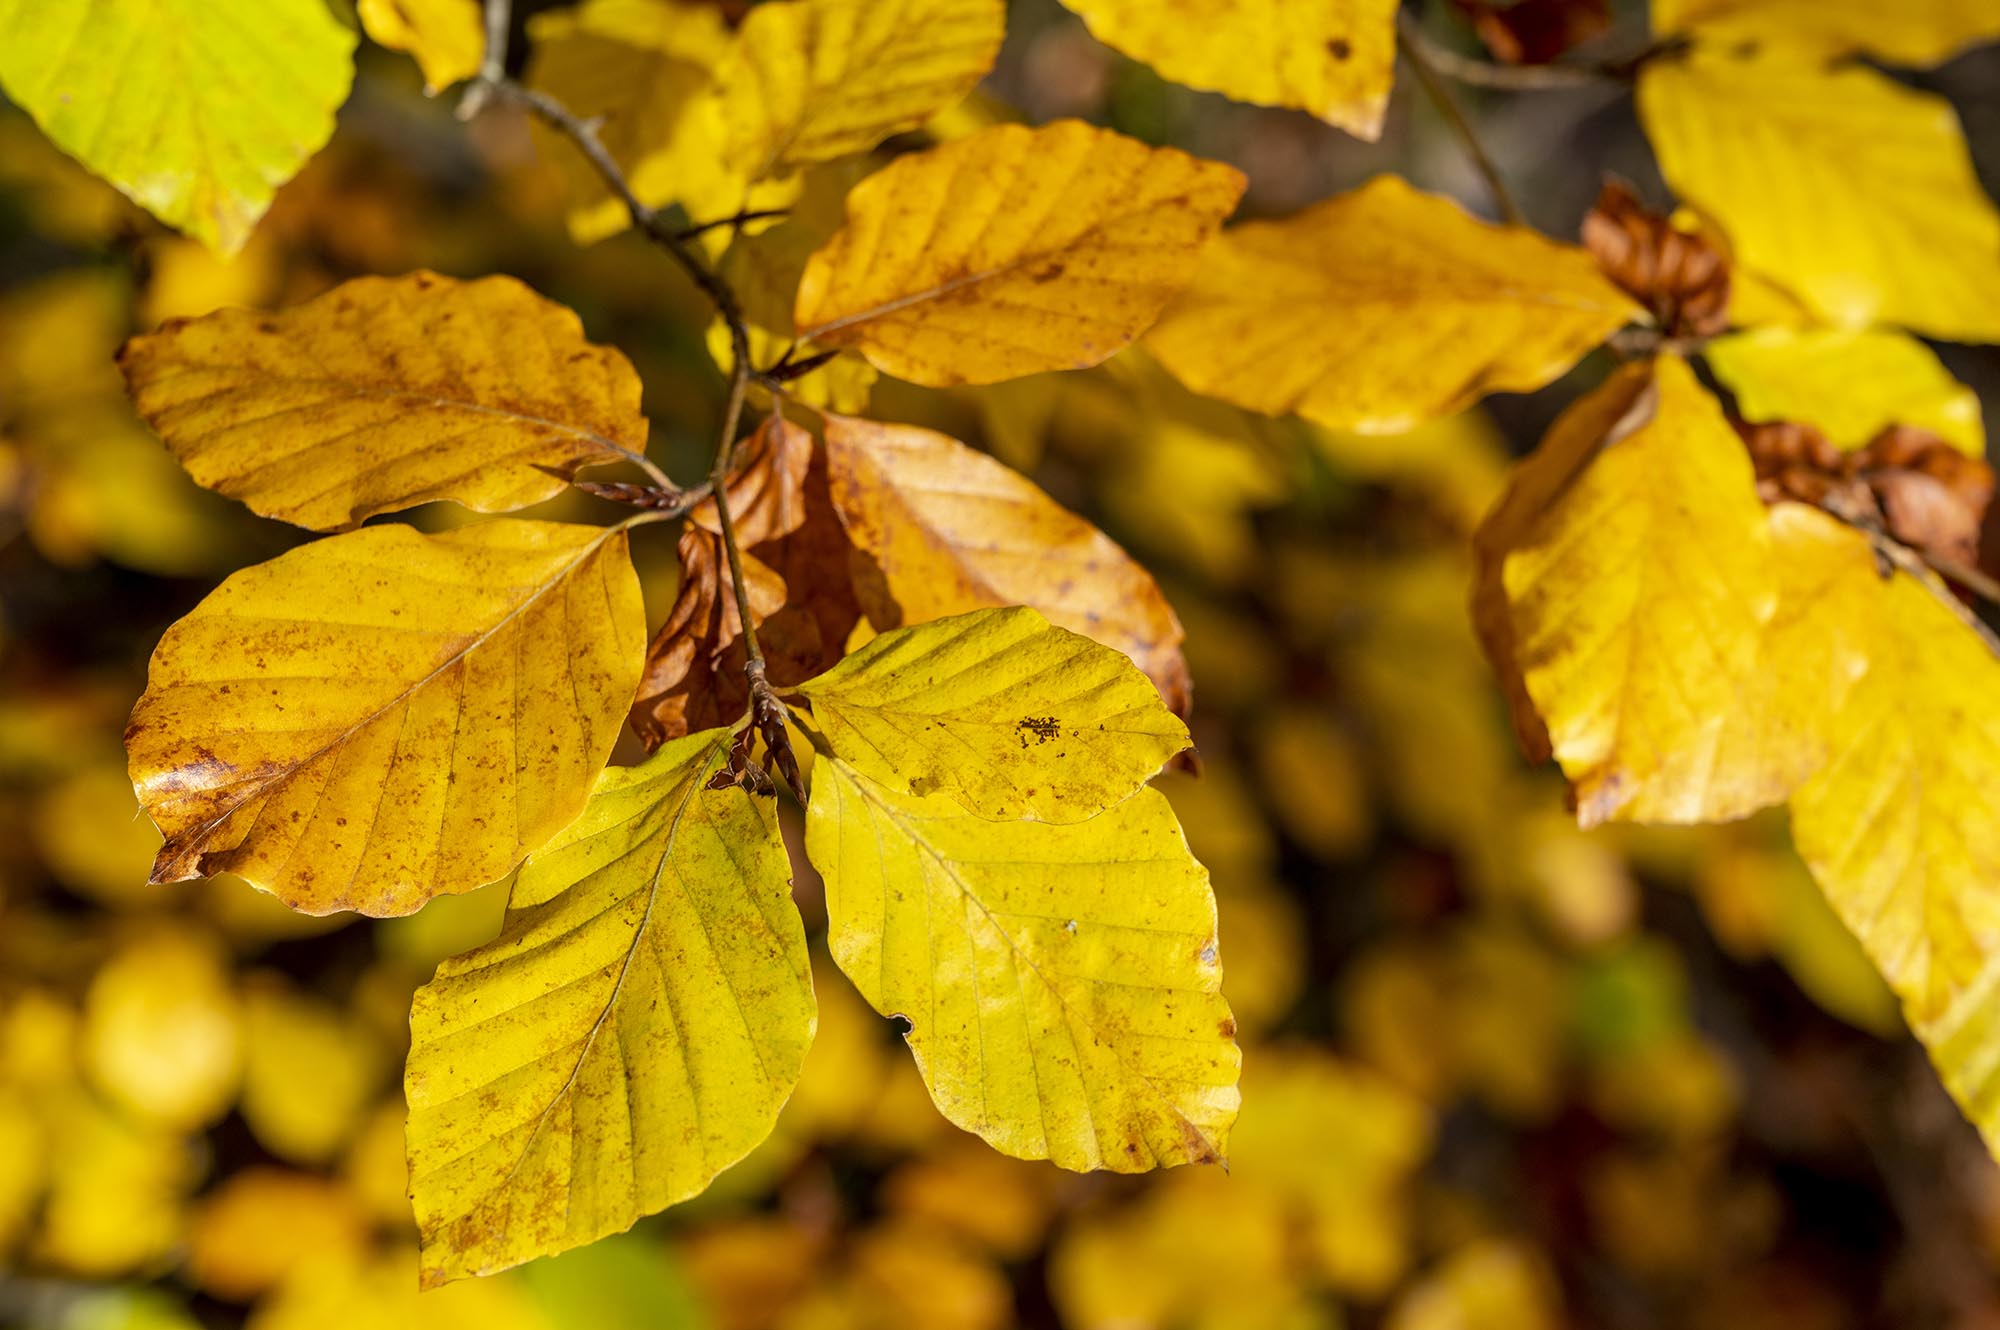 In Gelb- und Goldtönen leuchtendes Herbstlaub am Baum.